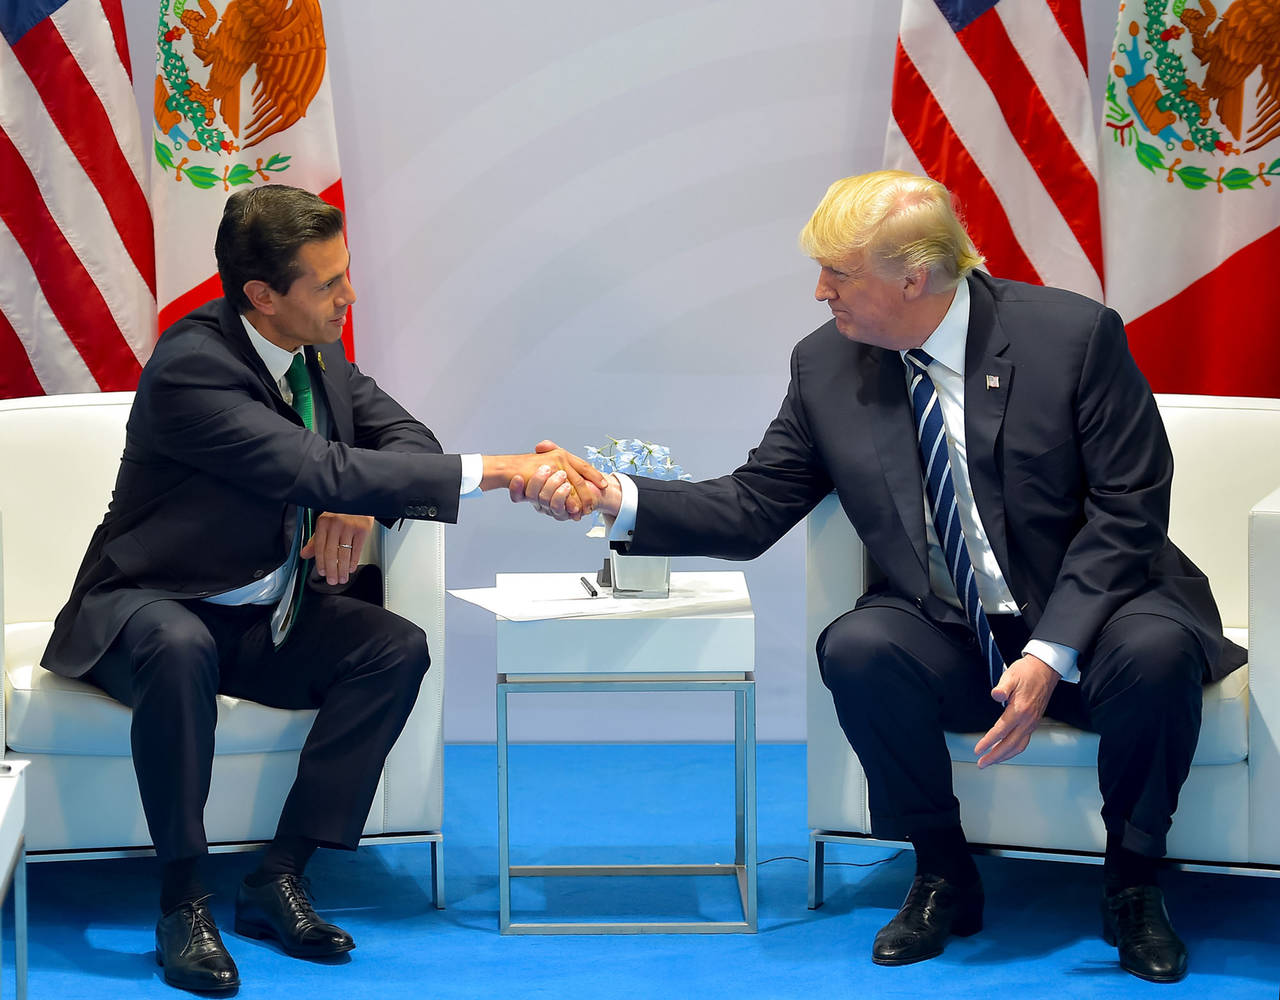 Tenso acercamiento. El presidente de México, Enrique Peña Nieto (izq.), y su homólogo estadounidense, Donald Trump, se saludan de mano por primera vez desde que el republicano llegó a la Casa Blanca, en el marco de la cumbre del G-20 en Hamburgo.